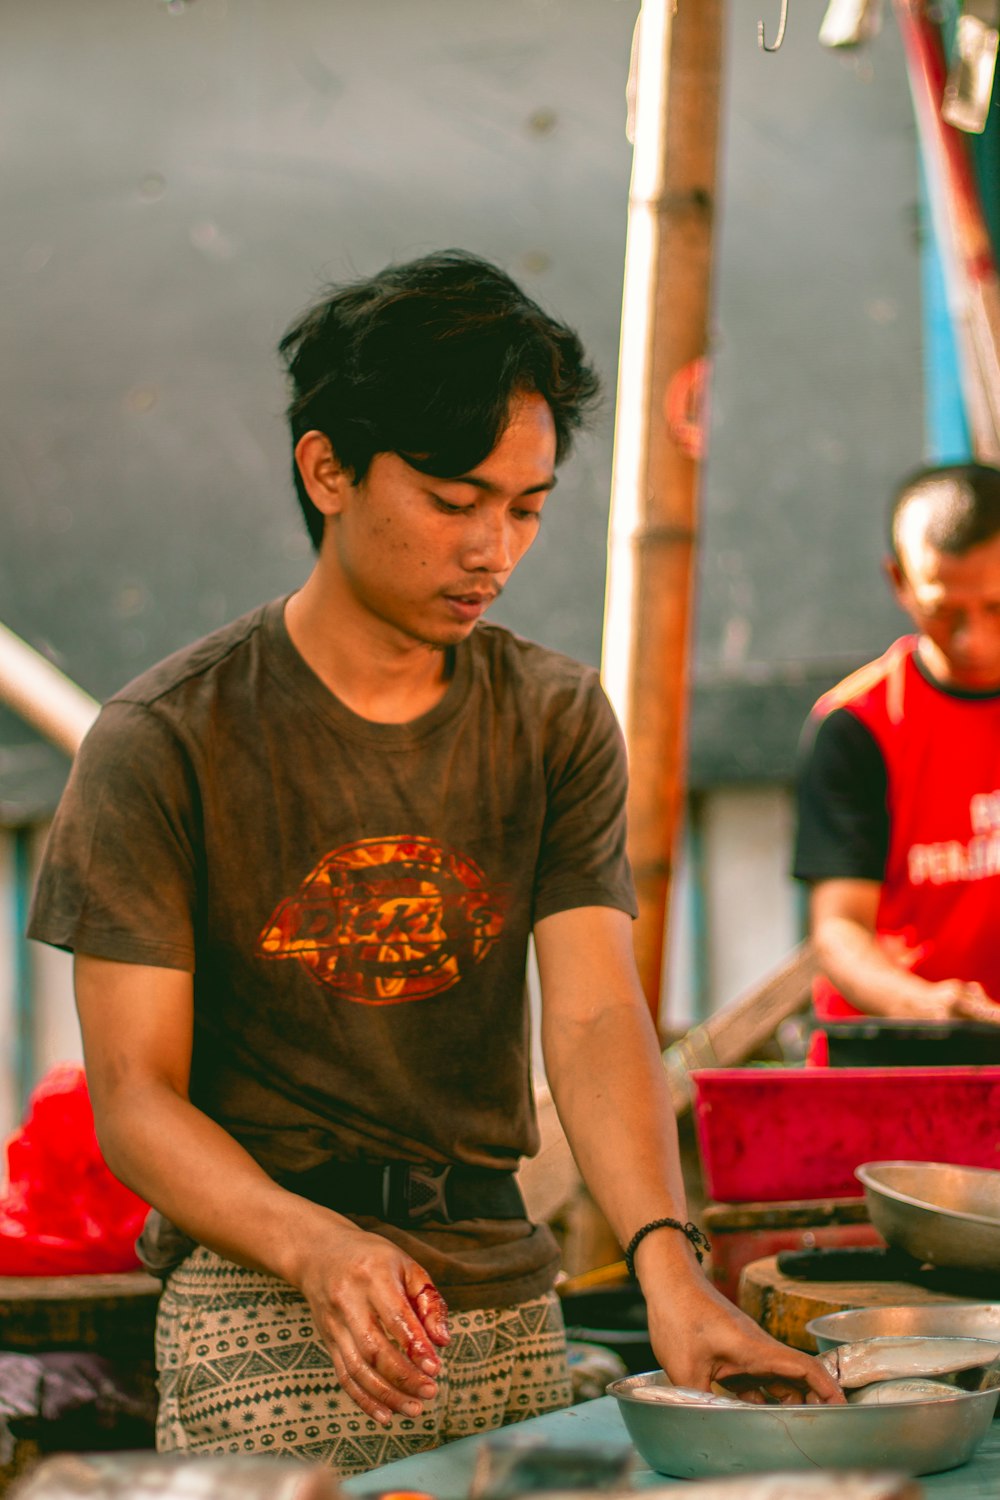 Mann im braunen Rundhals-T-Shirt neben rotem Plastikbehälter